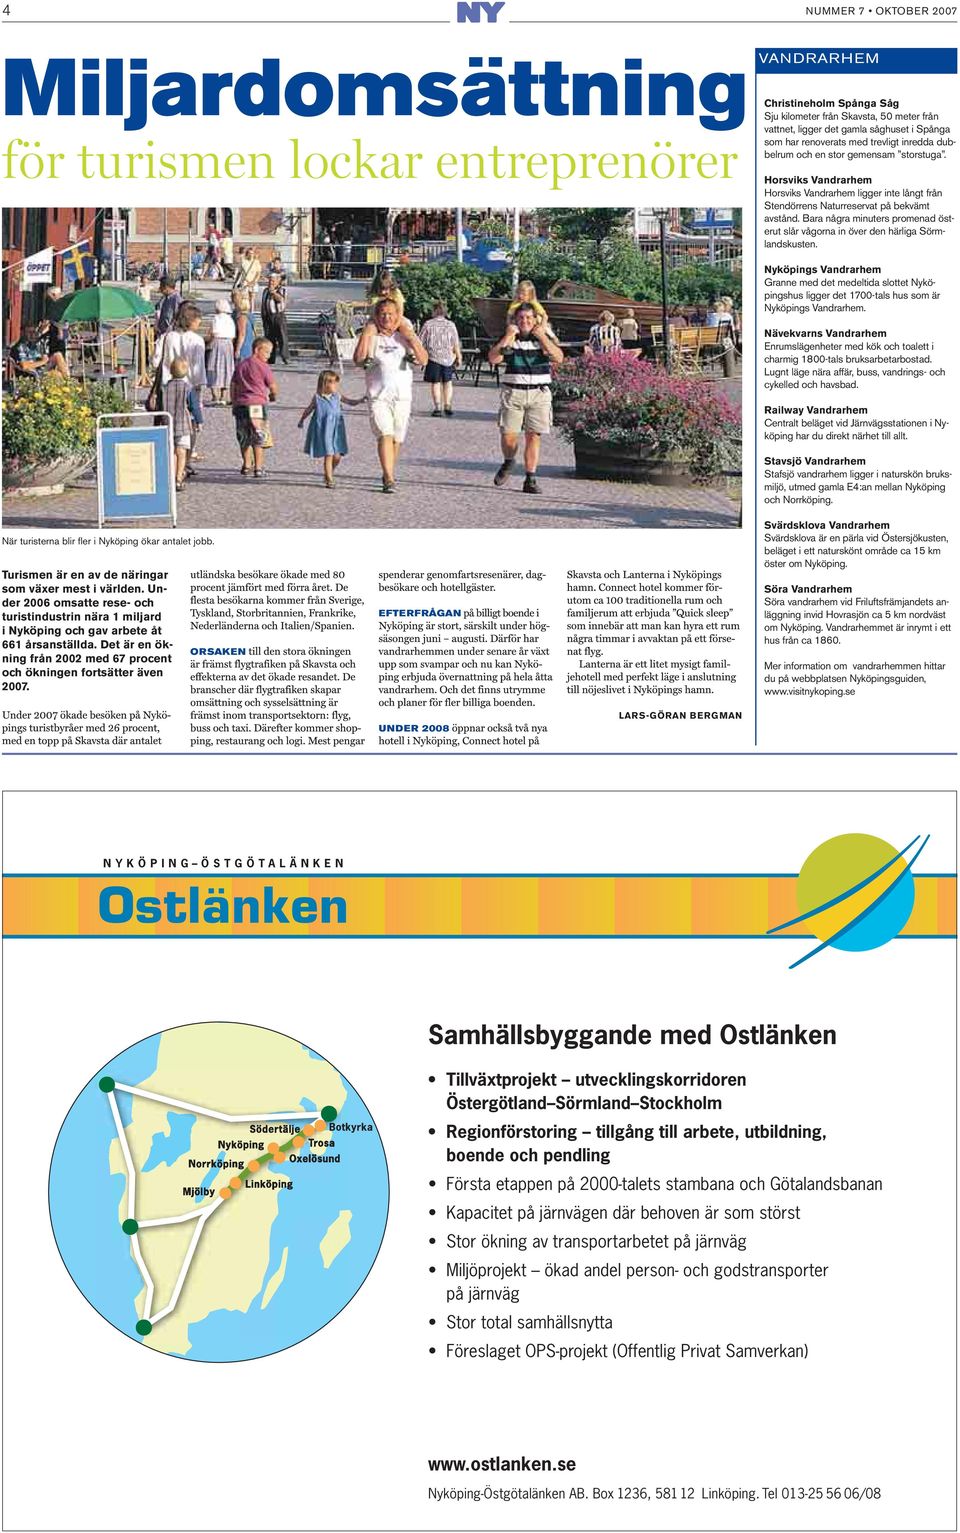 Under 2006 omsatte rese- och turistindustrin nära 1 miljard i Nyköping och gav arbete åt 661 årsanställda. Det är en ökning från 2002 med 67 procent och ökningen fortsätter även 2007.